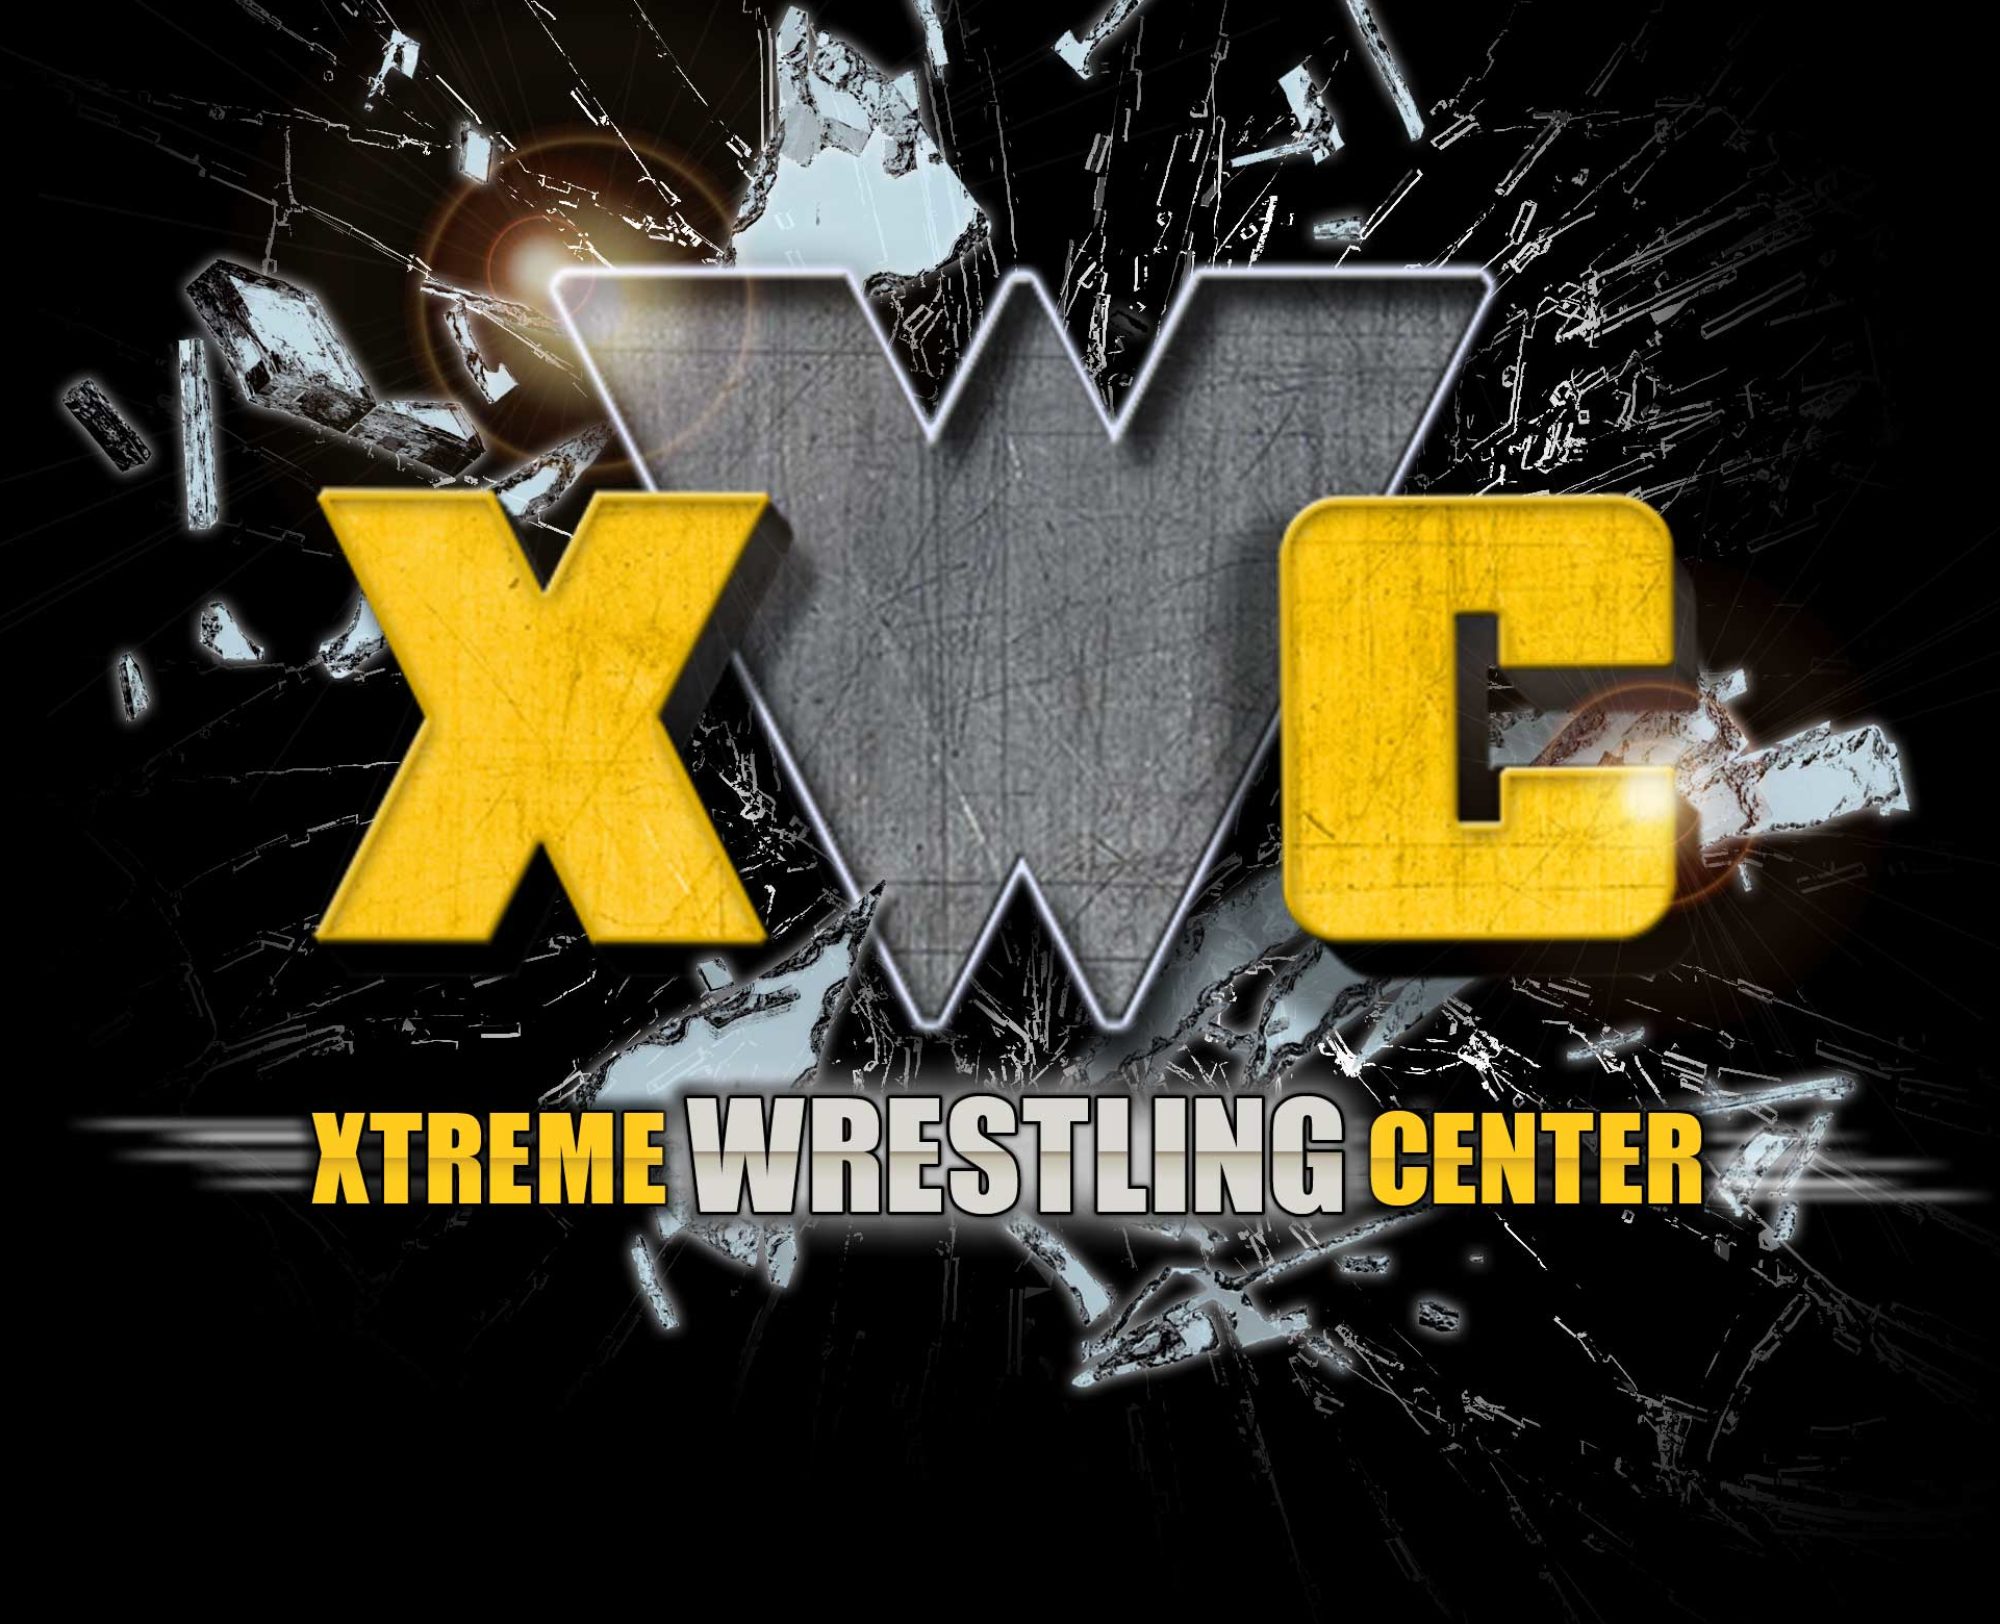  Xtreme Wrestling Center